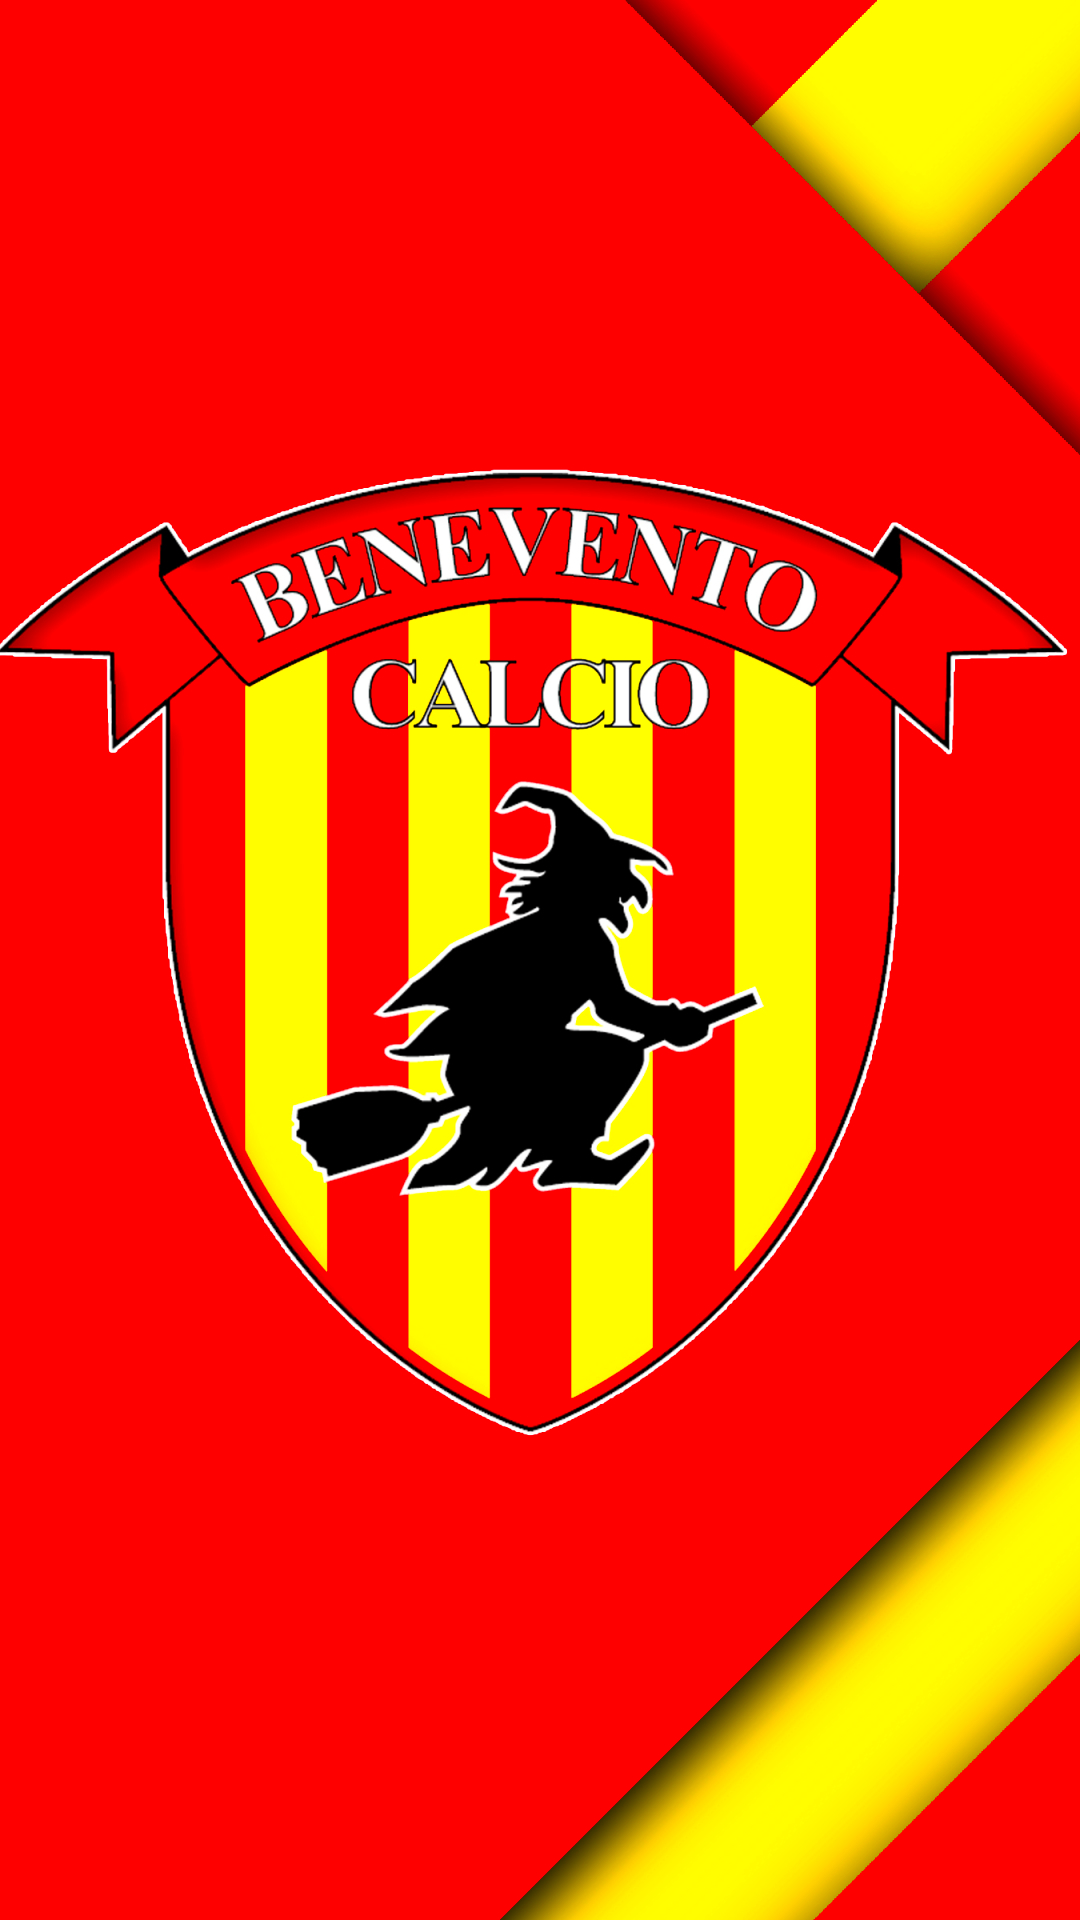 Descarga gratuita de fondo de pantalla para móvil de Fútbol, Logo, Emblema, Deporte, Benevento Calcio.